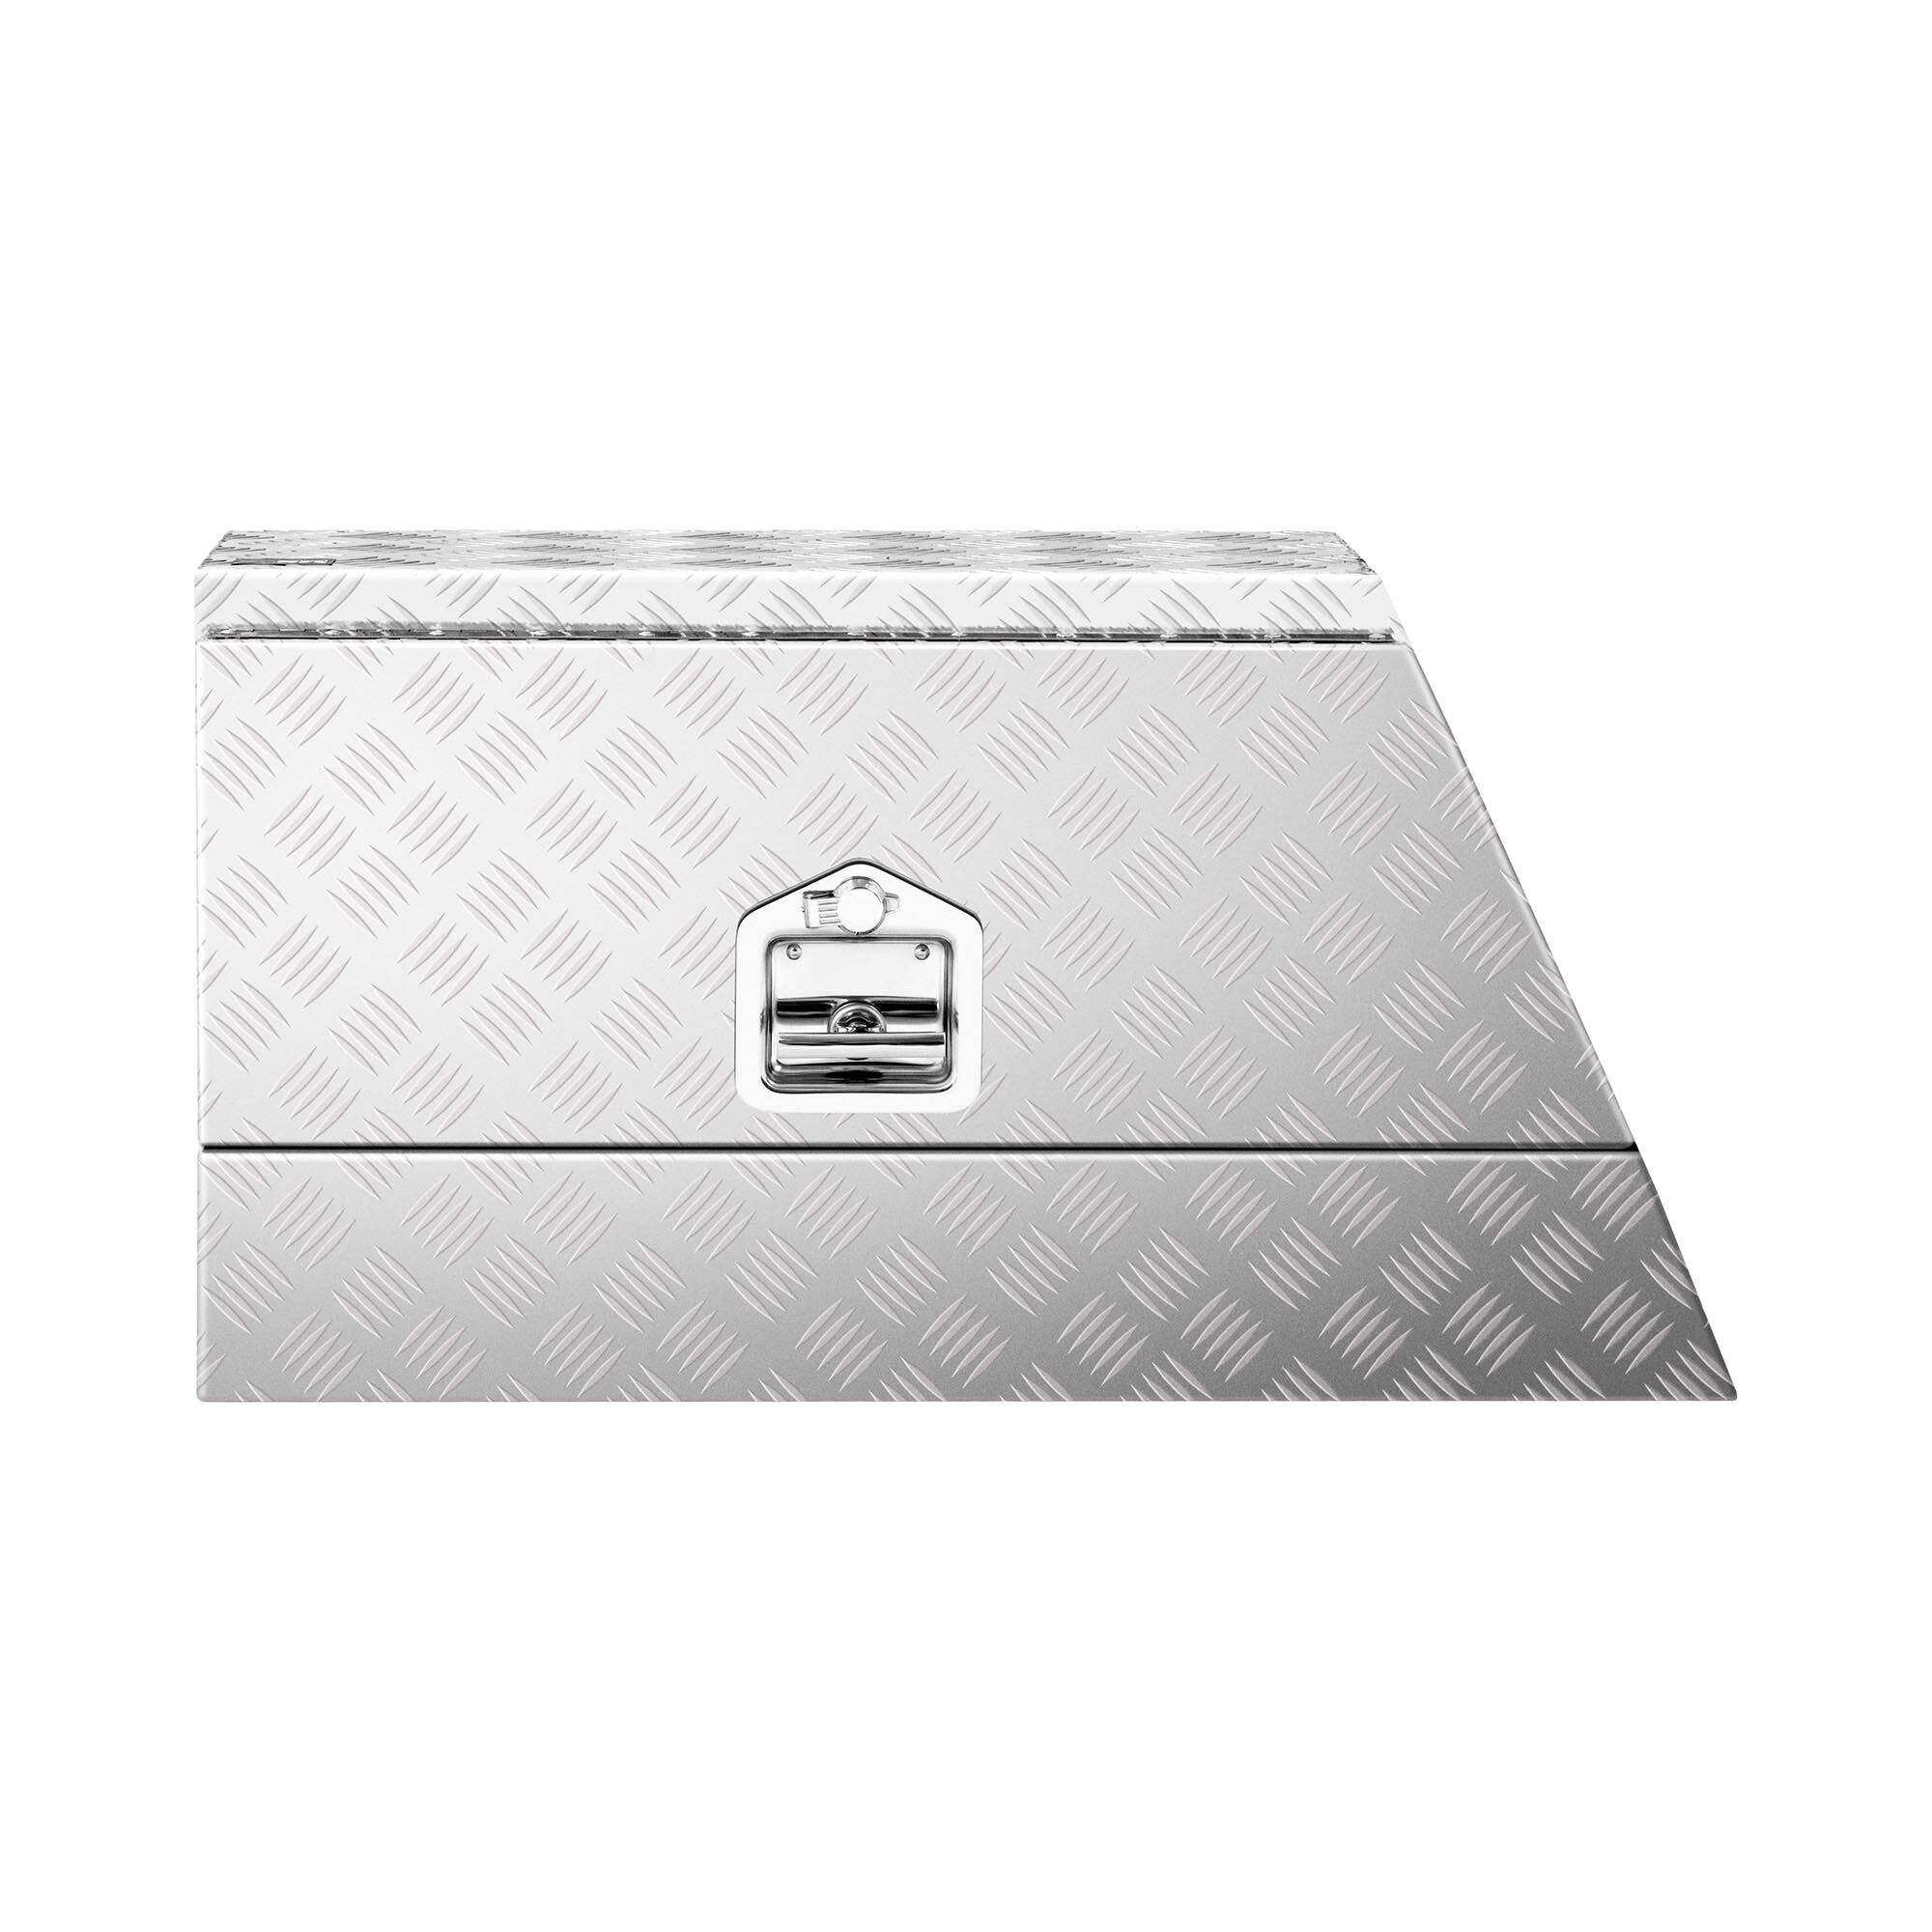 MSW Aluminium Tool Box - checker plate - 75 x 25 x 40 cm - 75 L - lockable MSW-ATB-750R